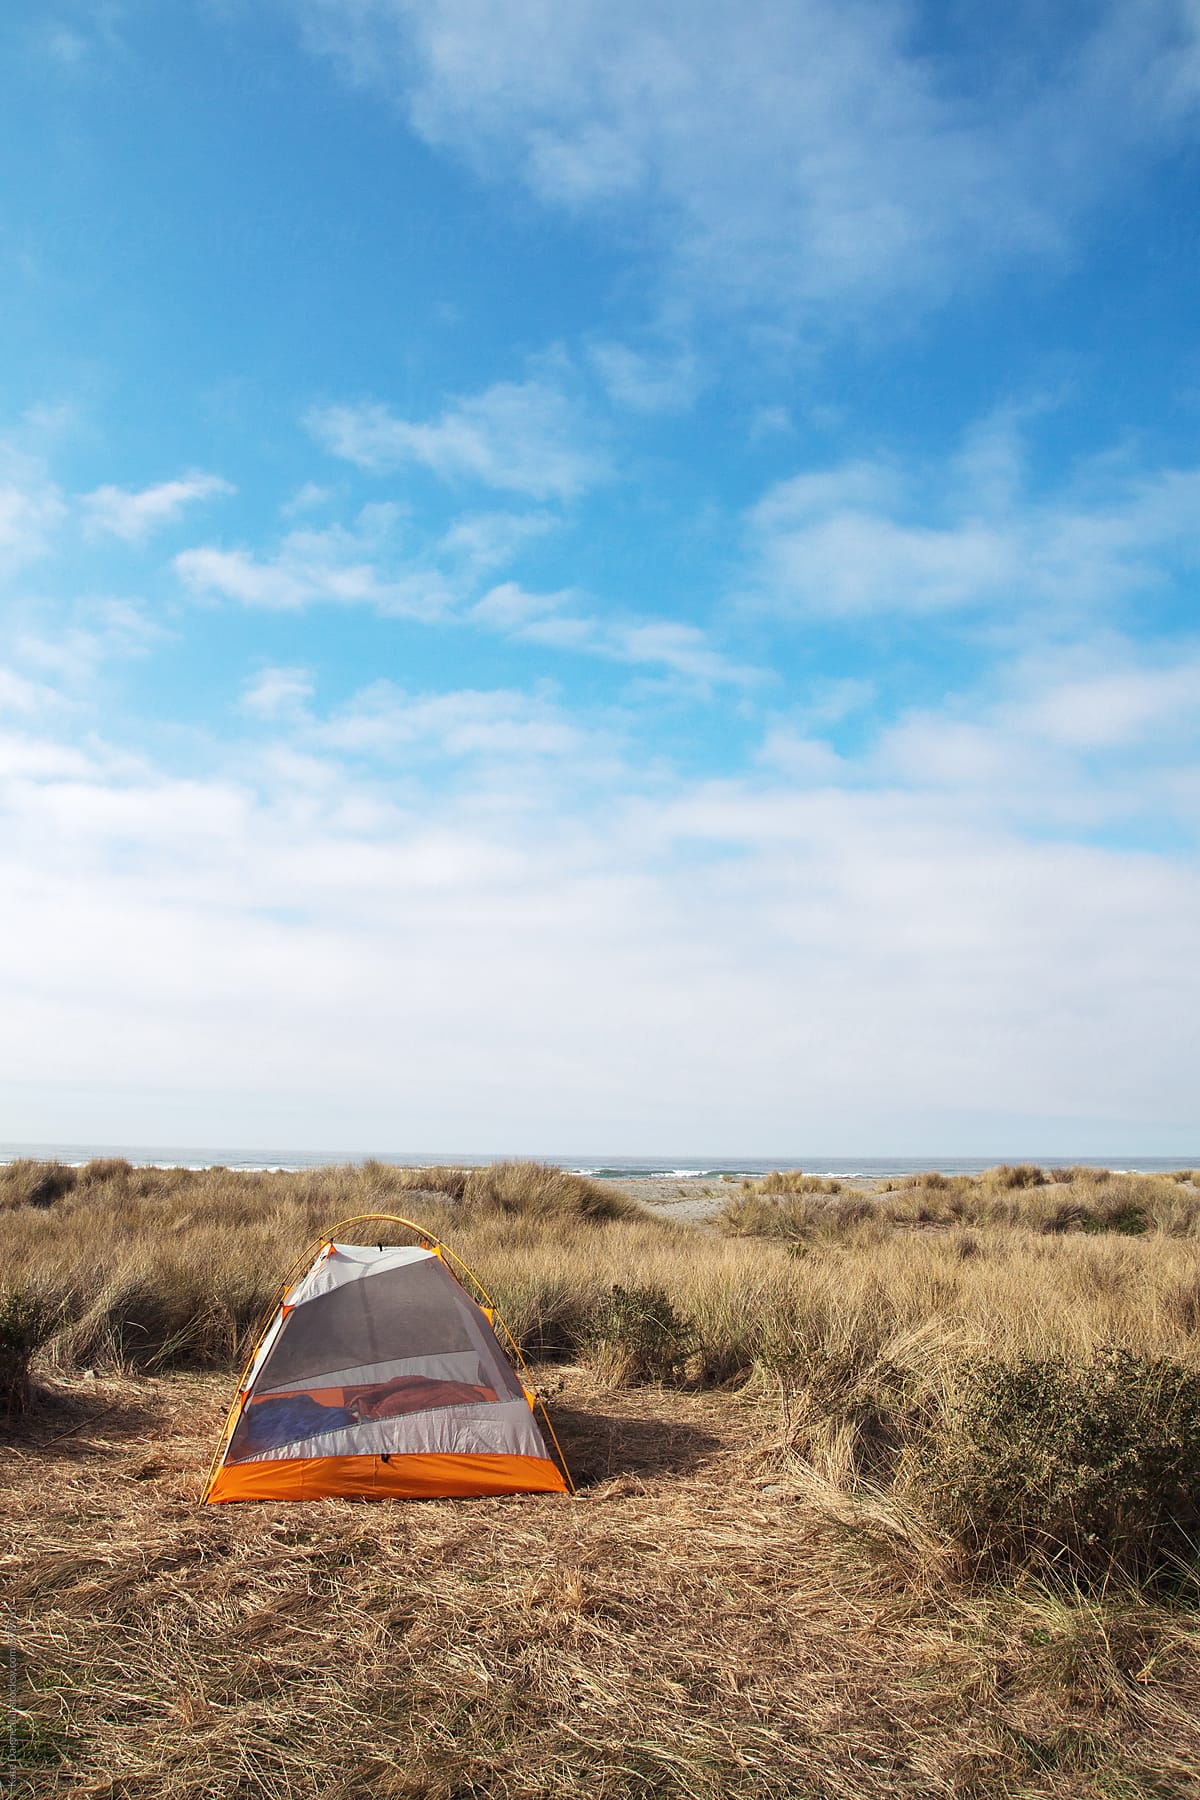 A tent set up in beach grass under a blue sky.